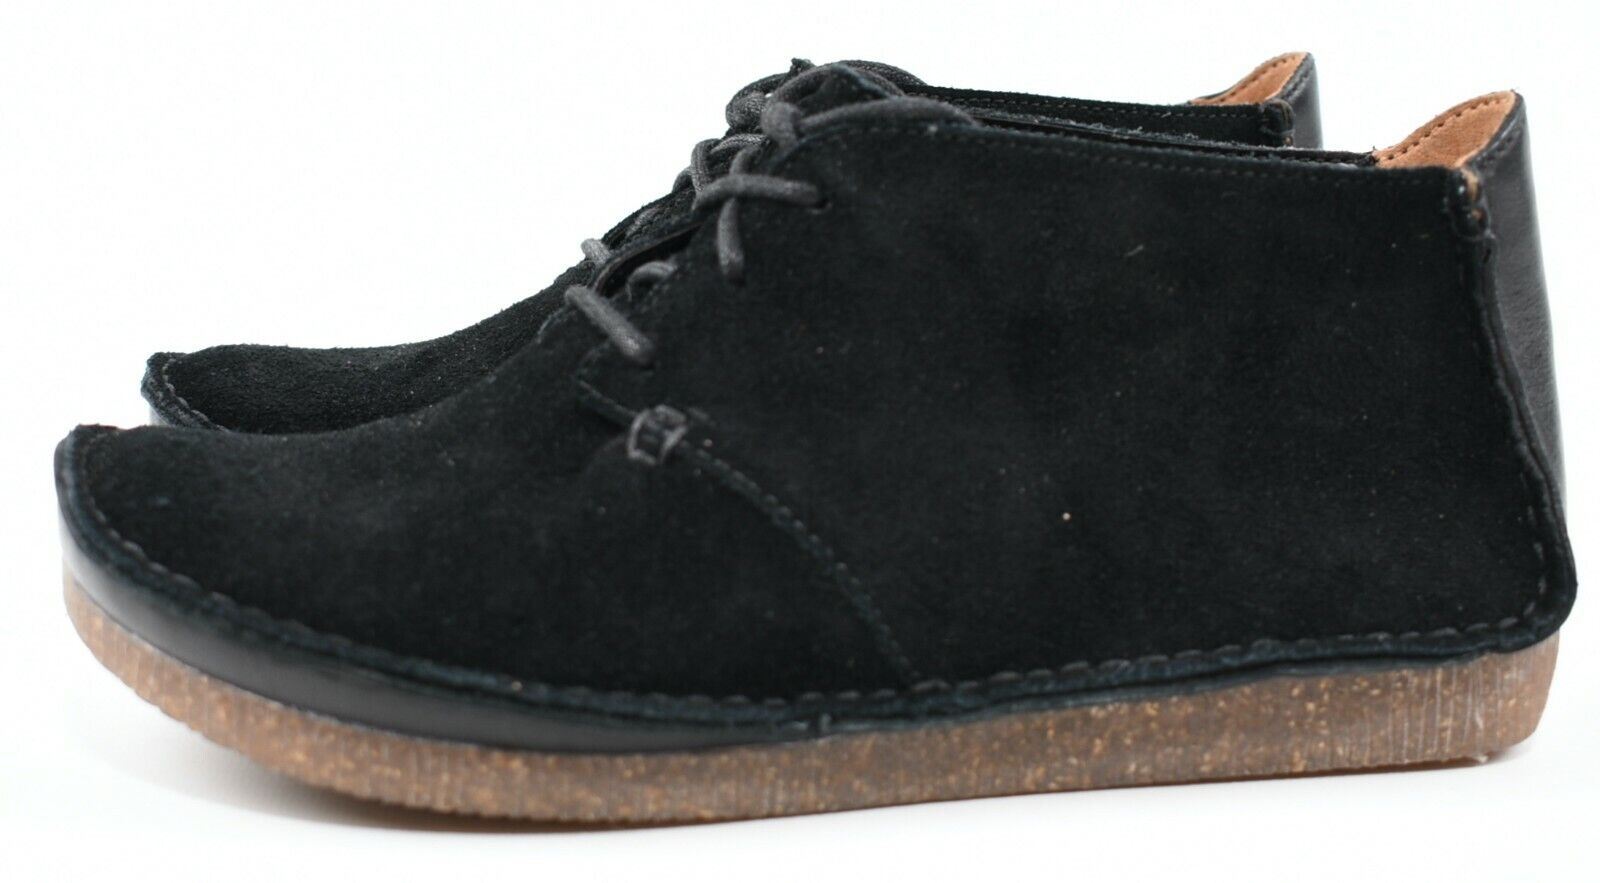 CLARKS Women's JANEY LYNN Black Suede Lace Up Shoes, size UK 3 / EU 36